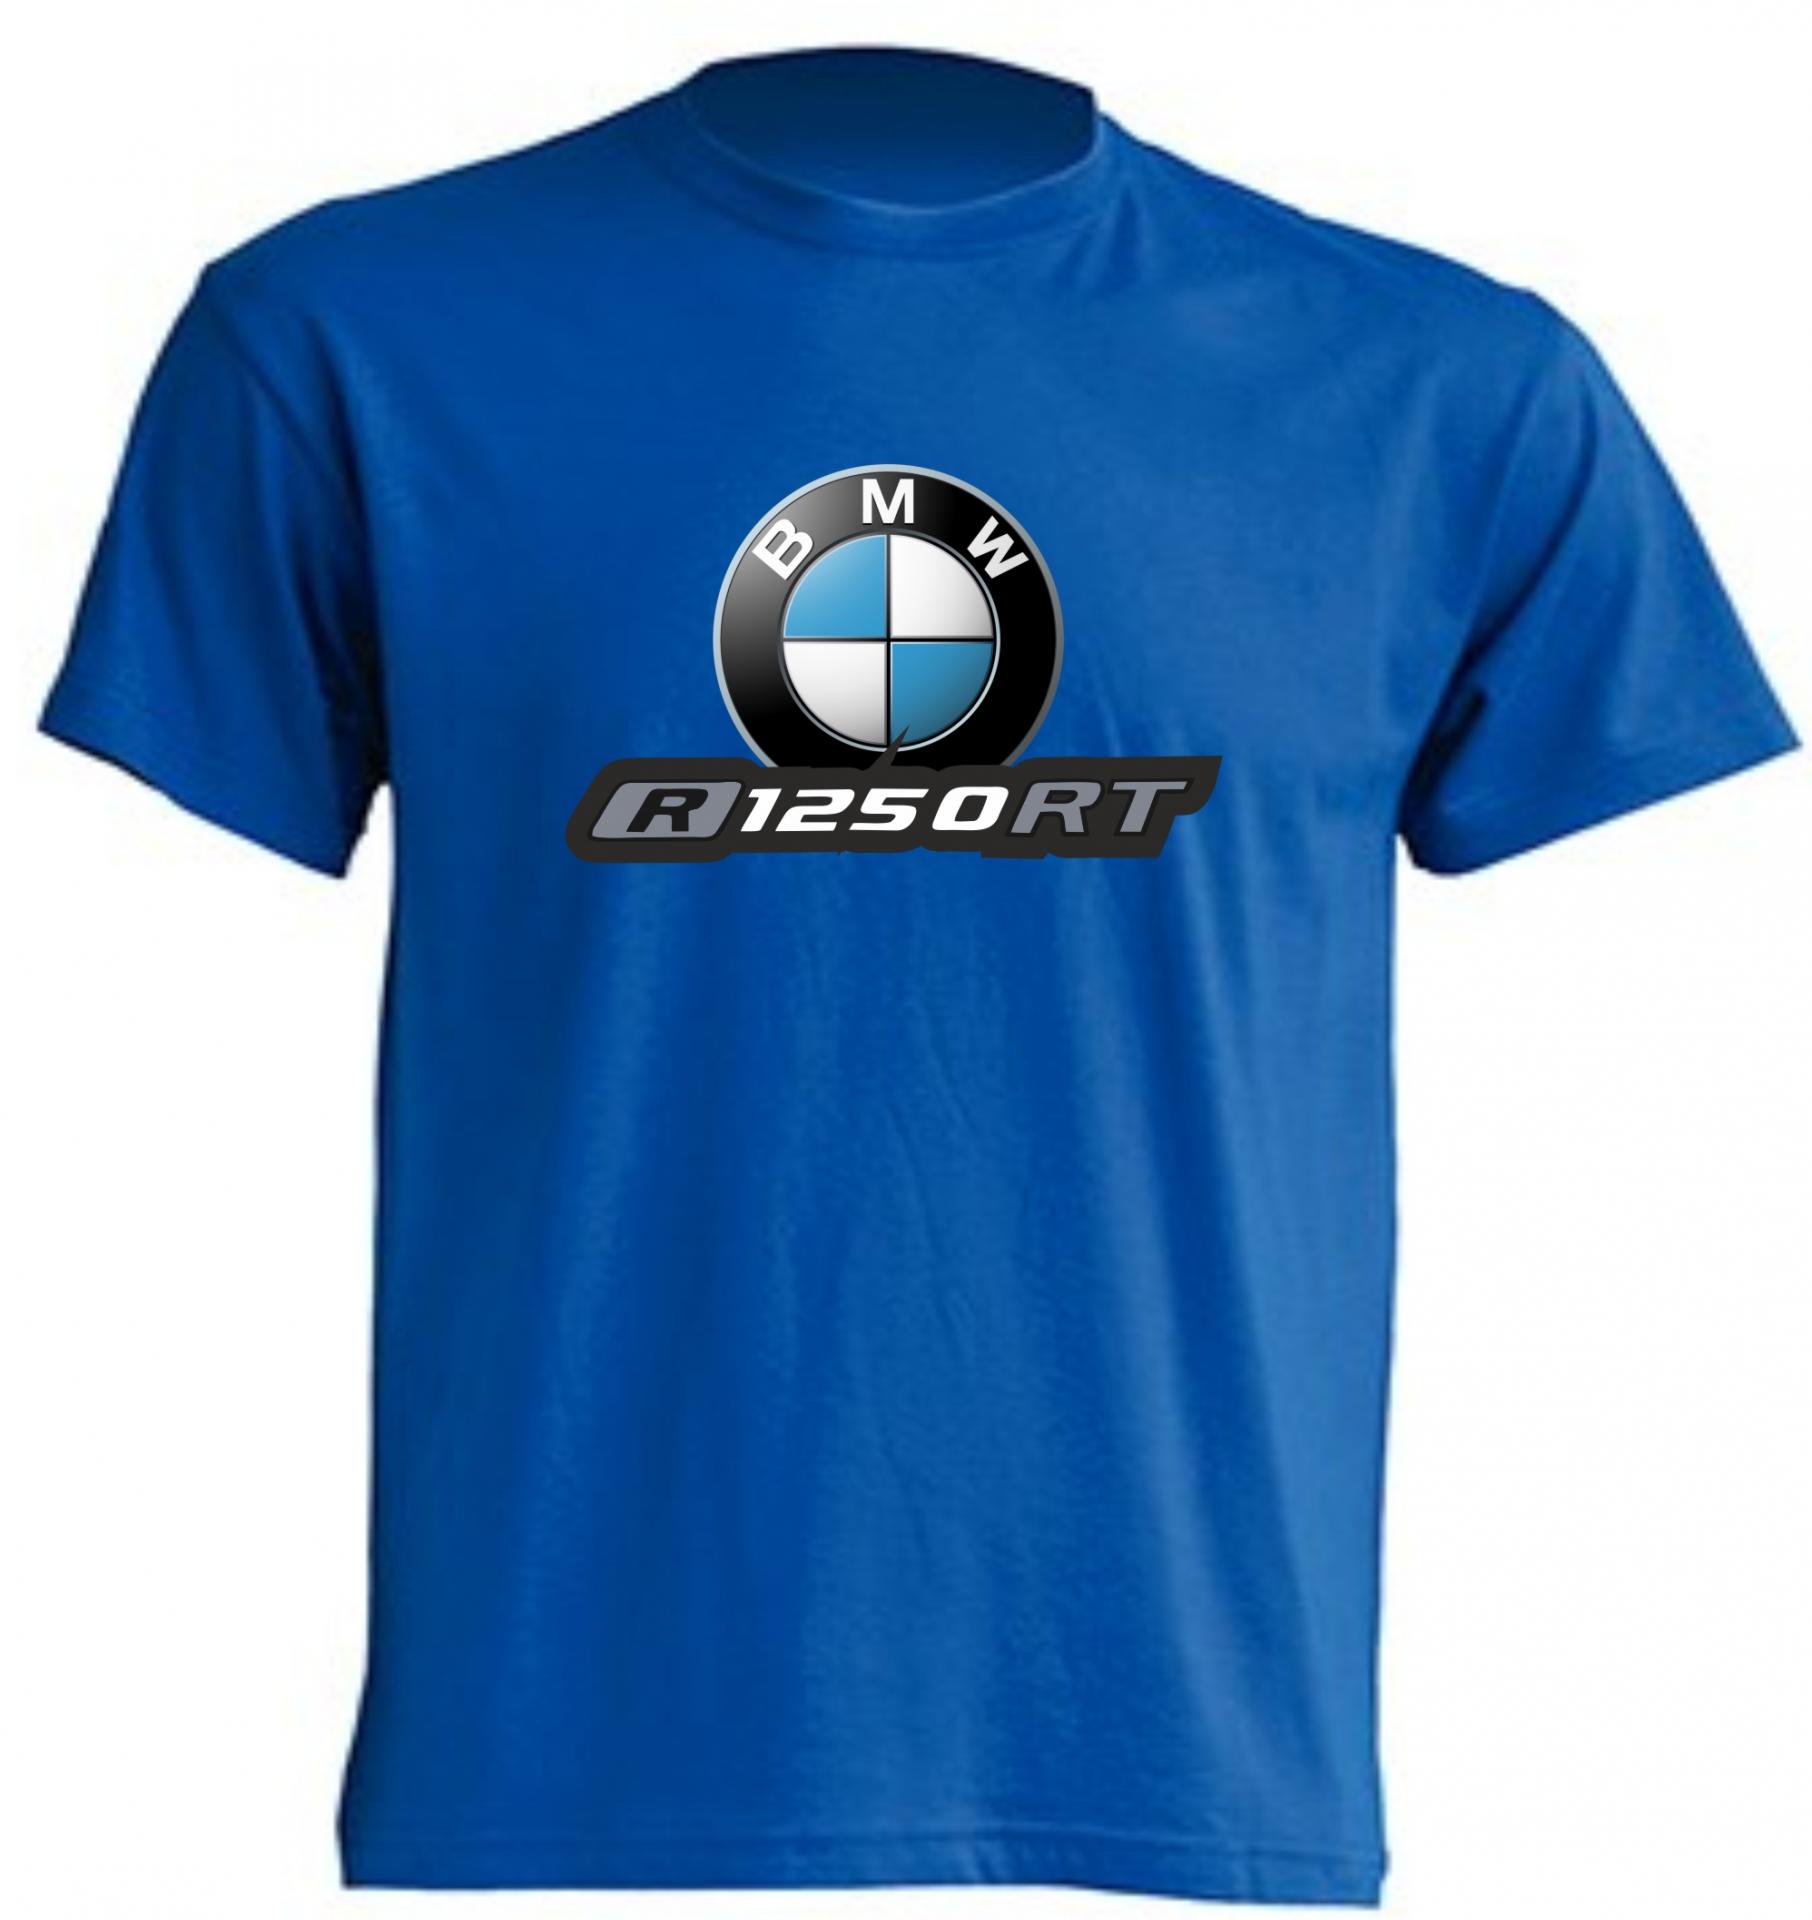 Comprar Camiseta BMW Motorsport Logo Blanco. Disponible en azul, hombre